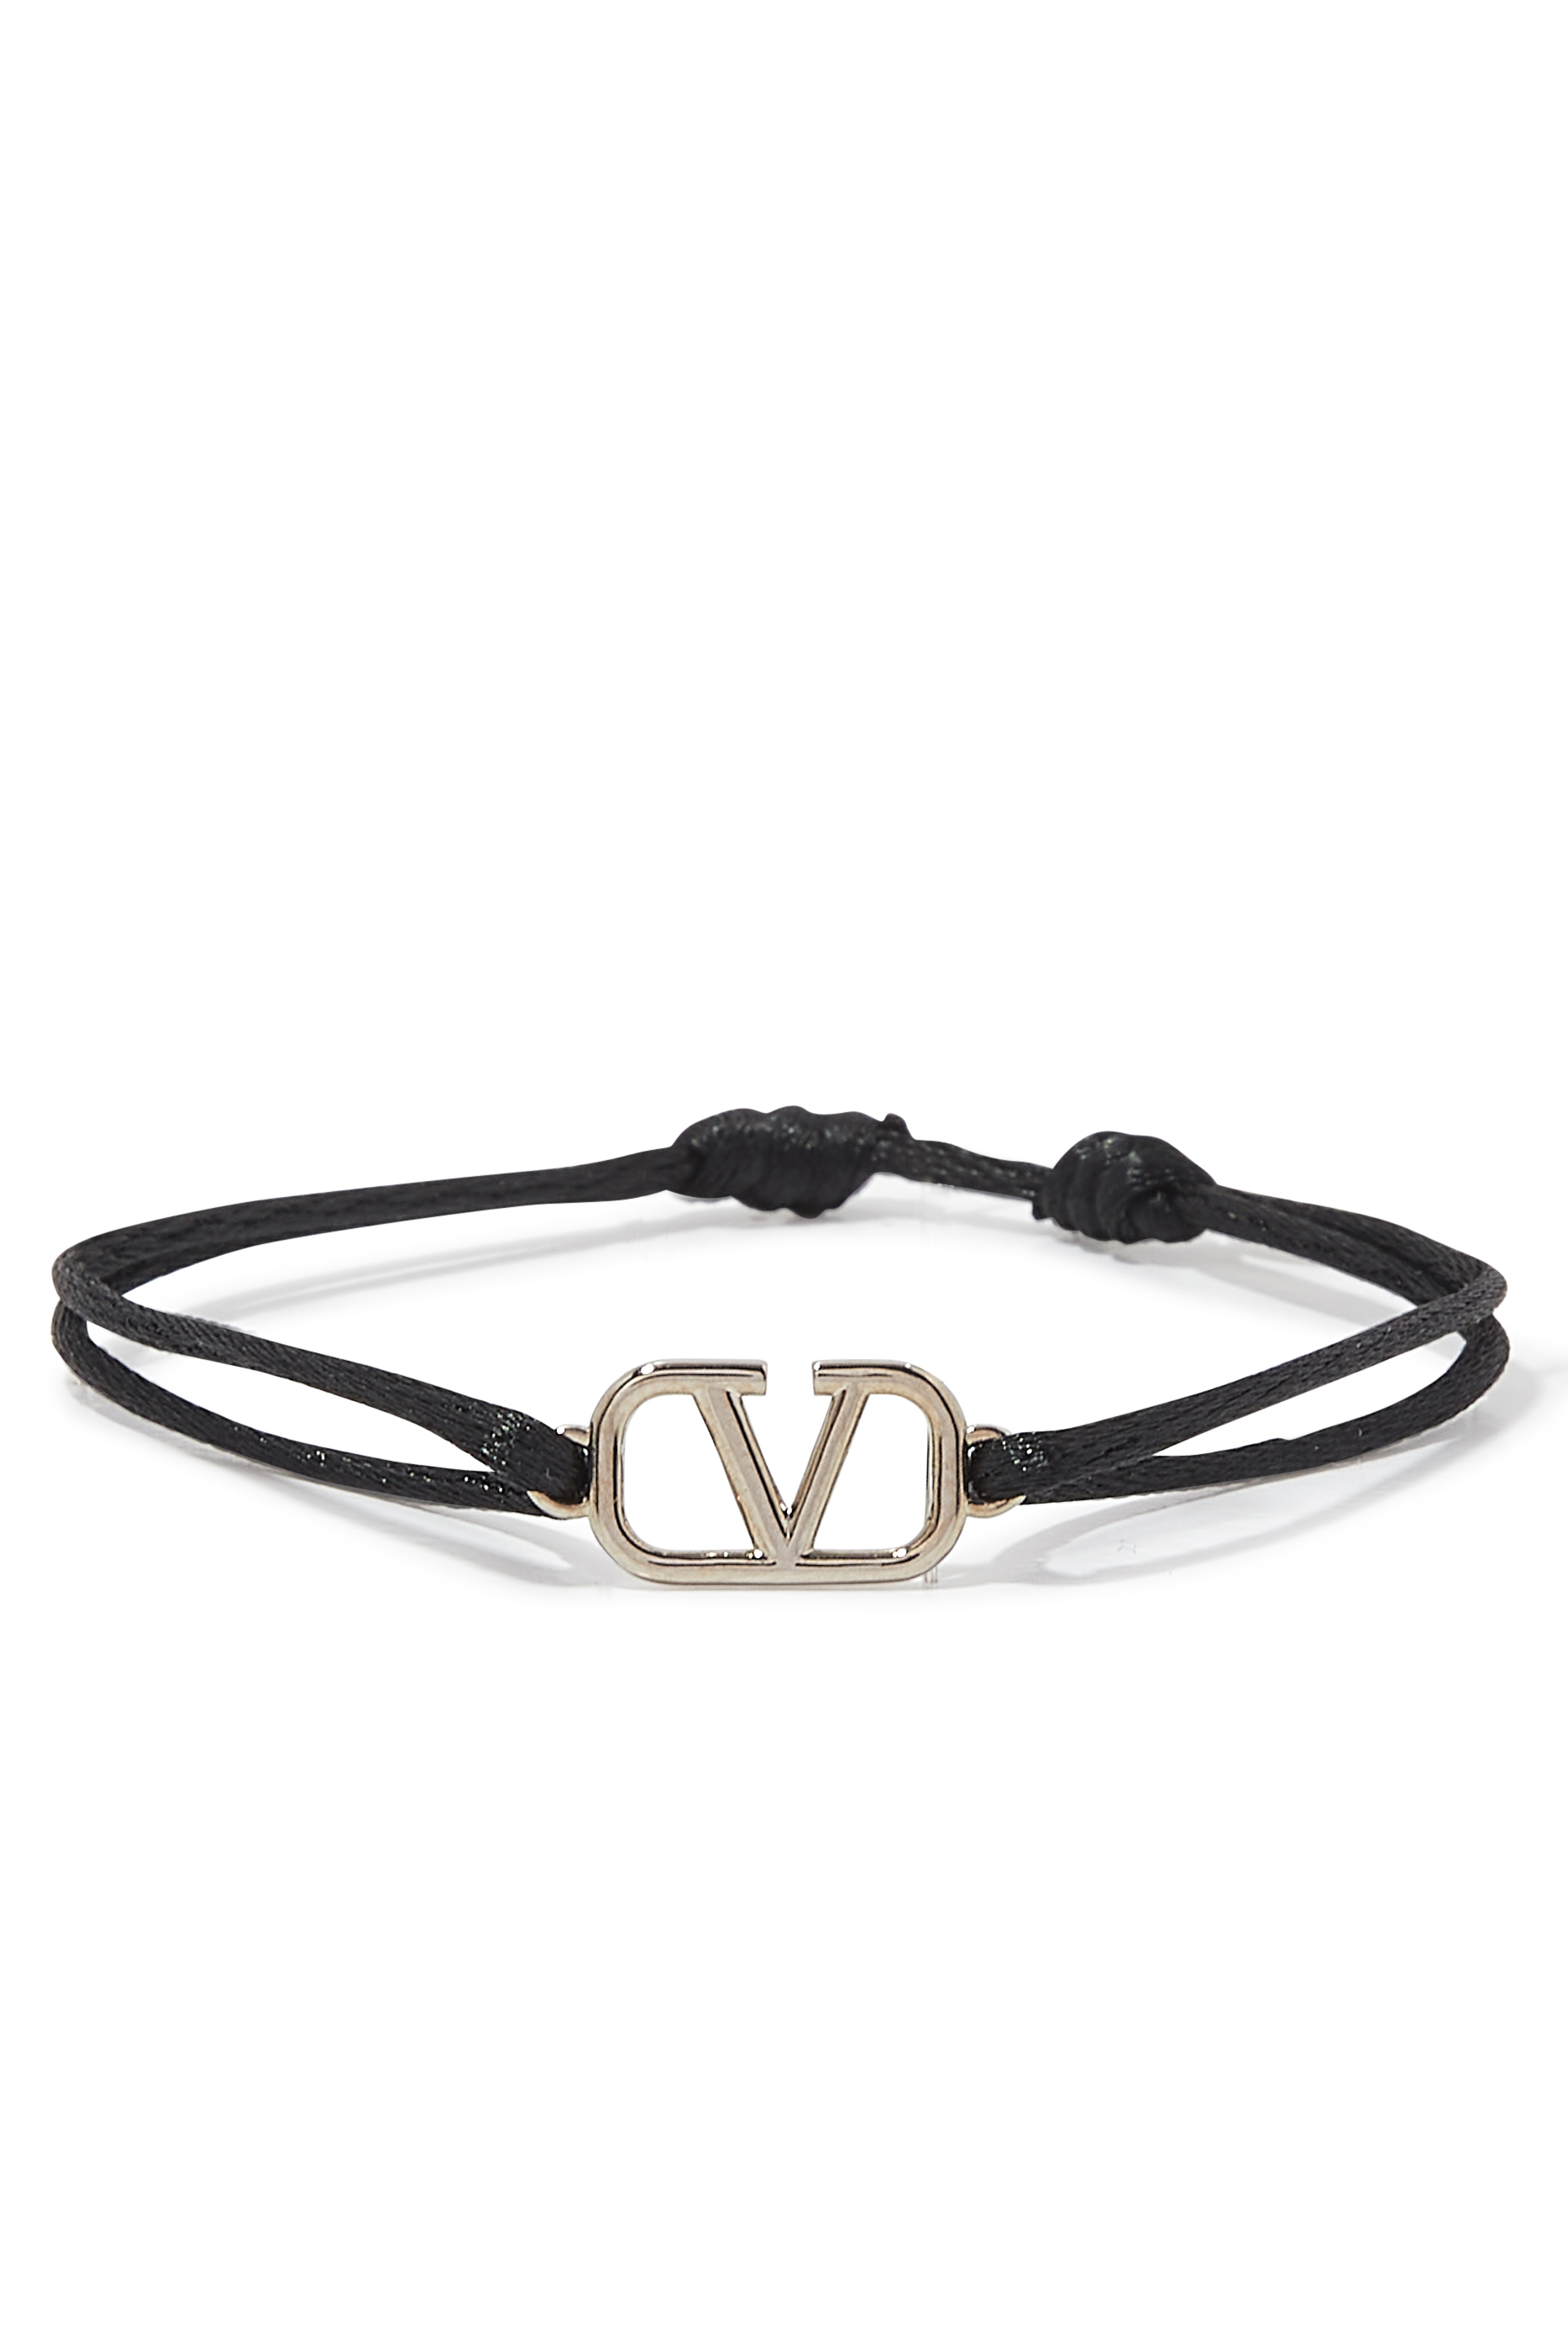 Authentic Valentino Garavani V Logo Curb Bracelet Chunky Heavy